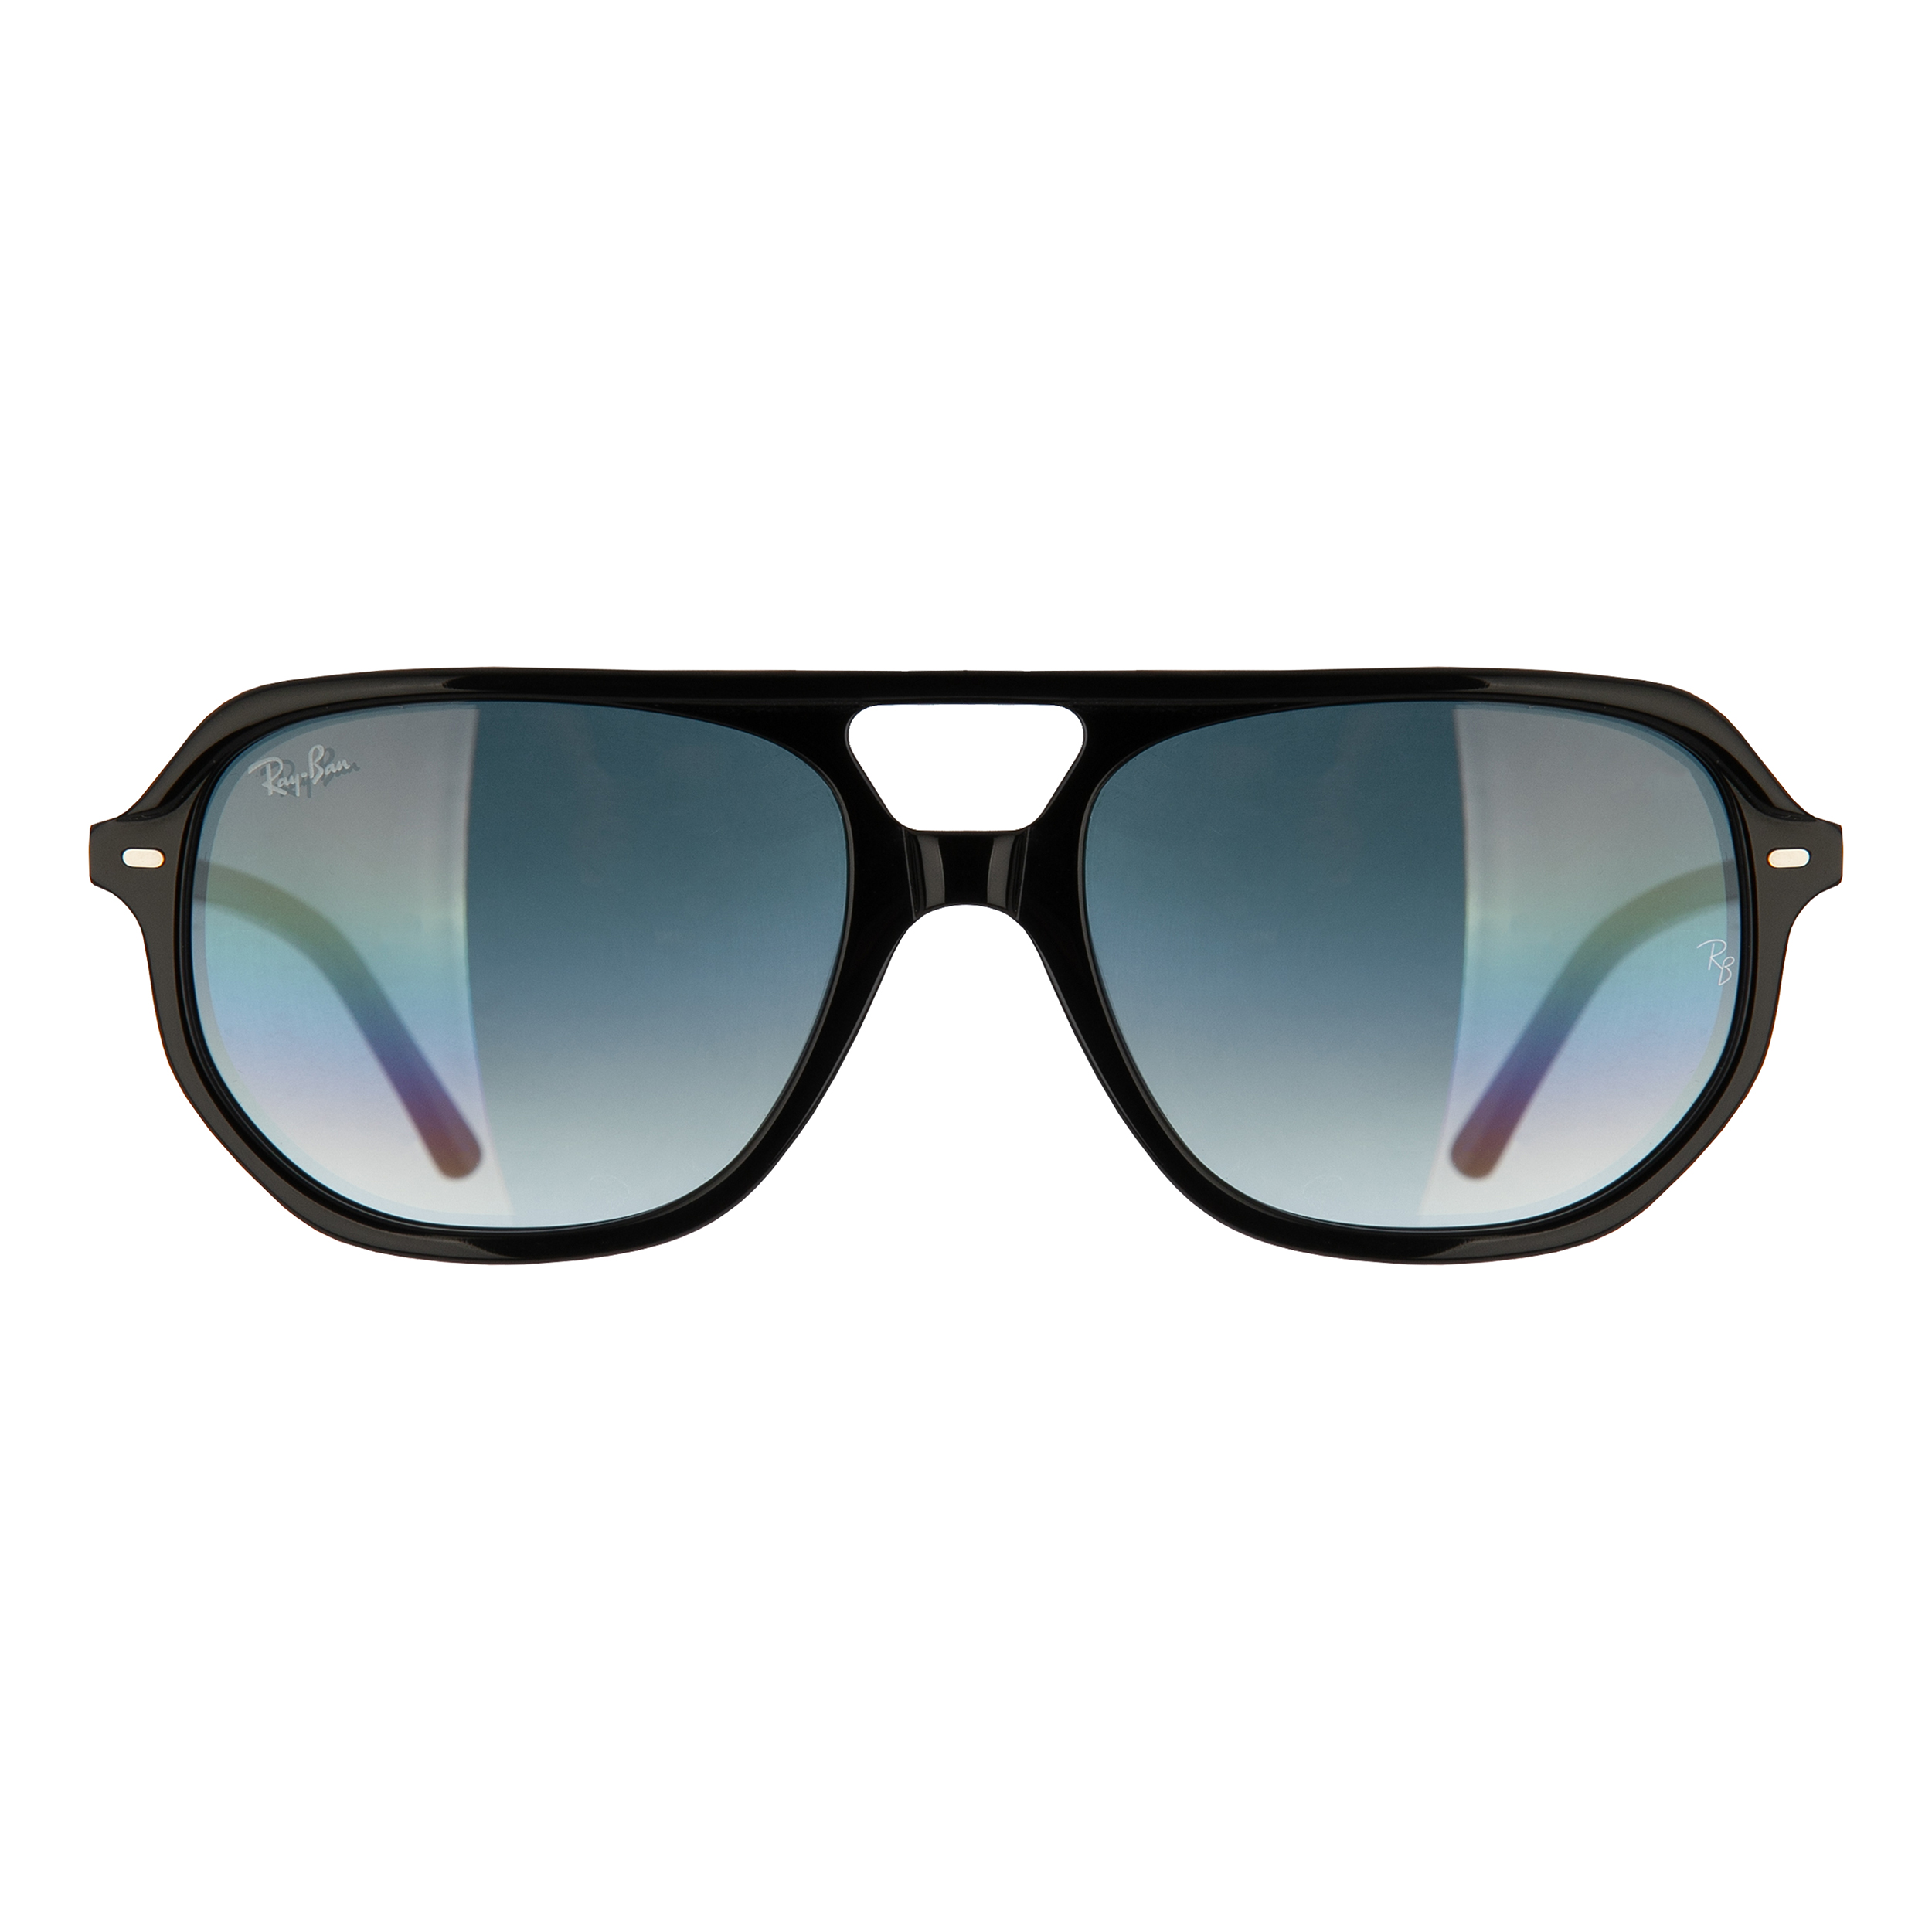 عینک آفتابی ری بن مدل RB2205-901/3F